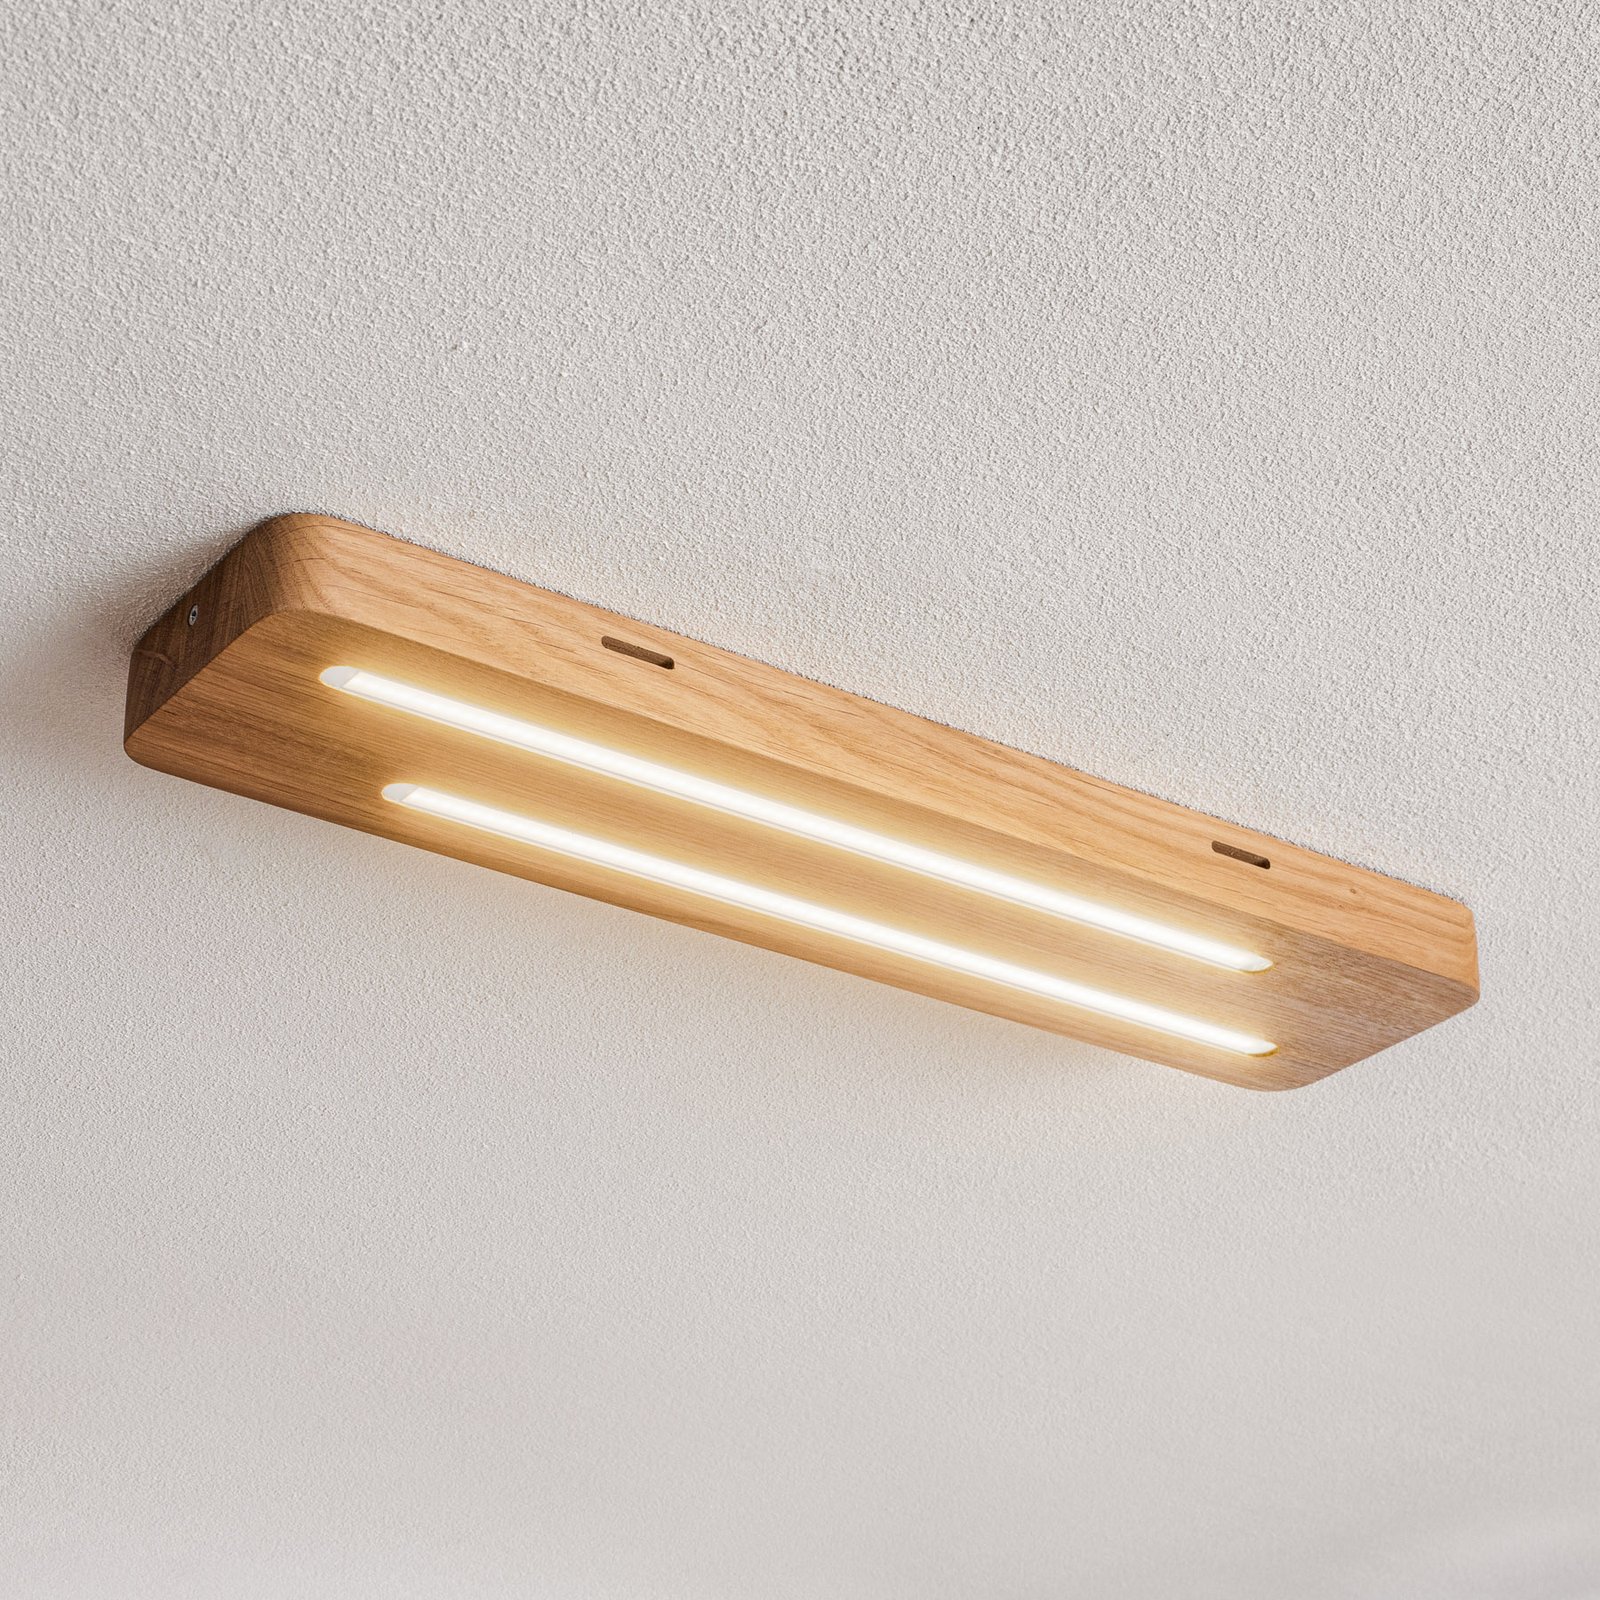 Neele - LED-Deckenlampe mit Eichenholz